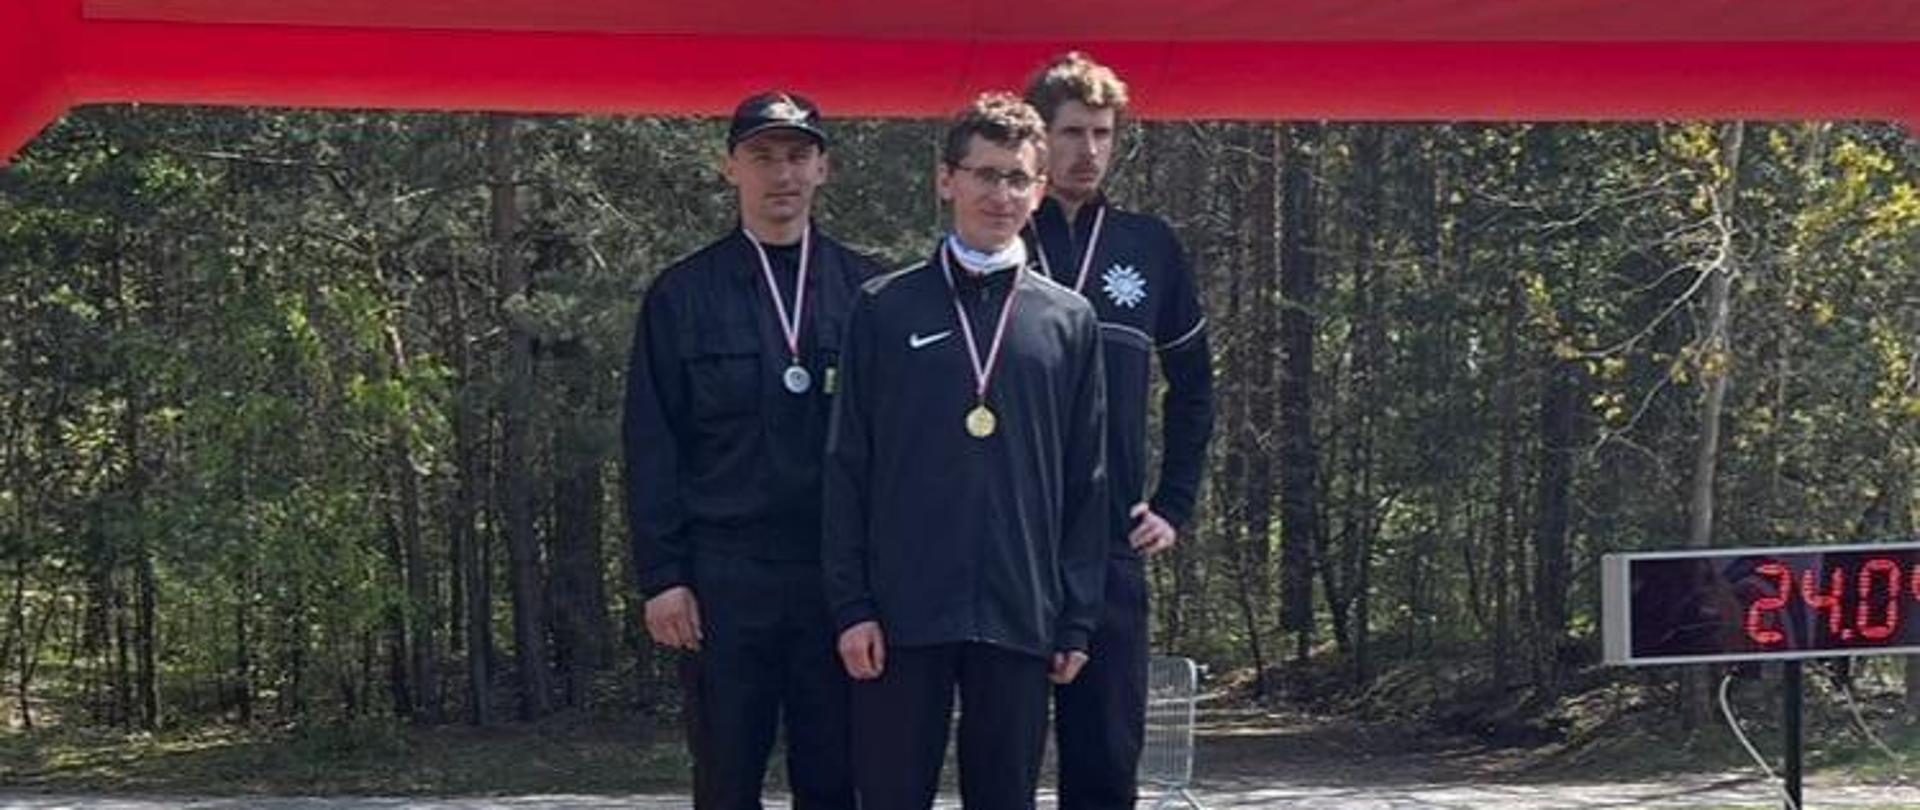 Zdjęcie przedstawia zwycięzców biegu przełajowego w kategorii do 35 roku życia stojących na podium po wręczeniu medali.